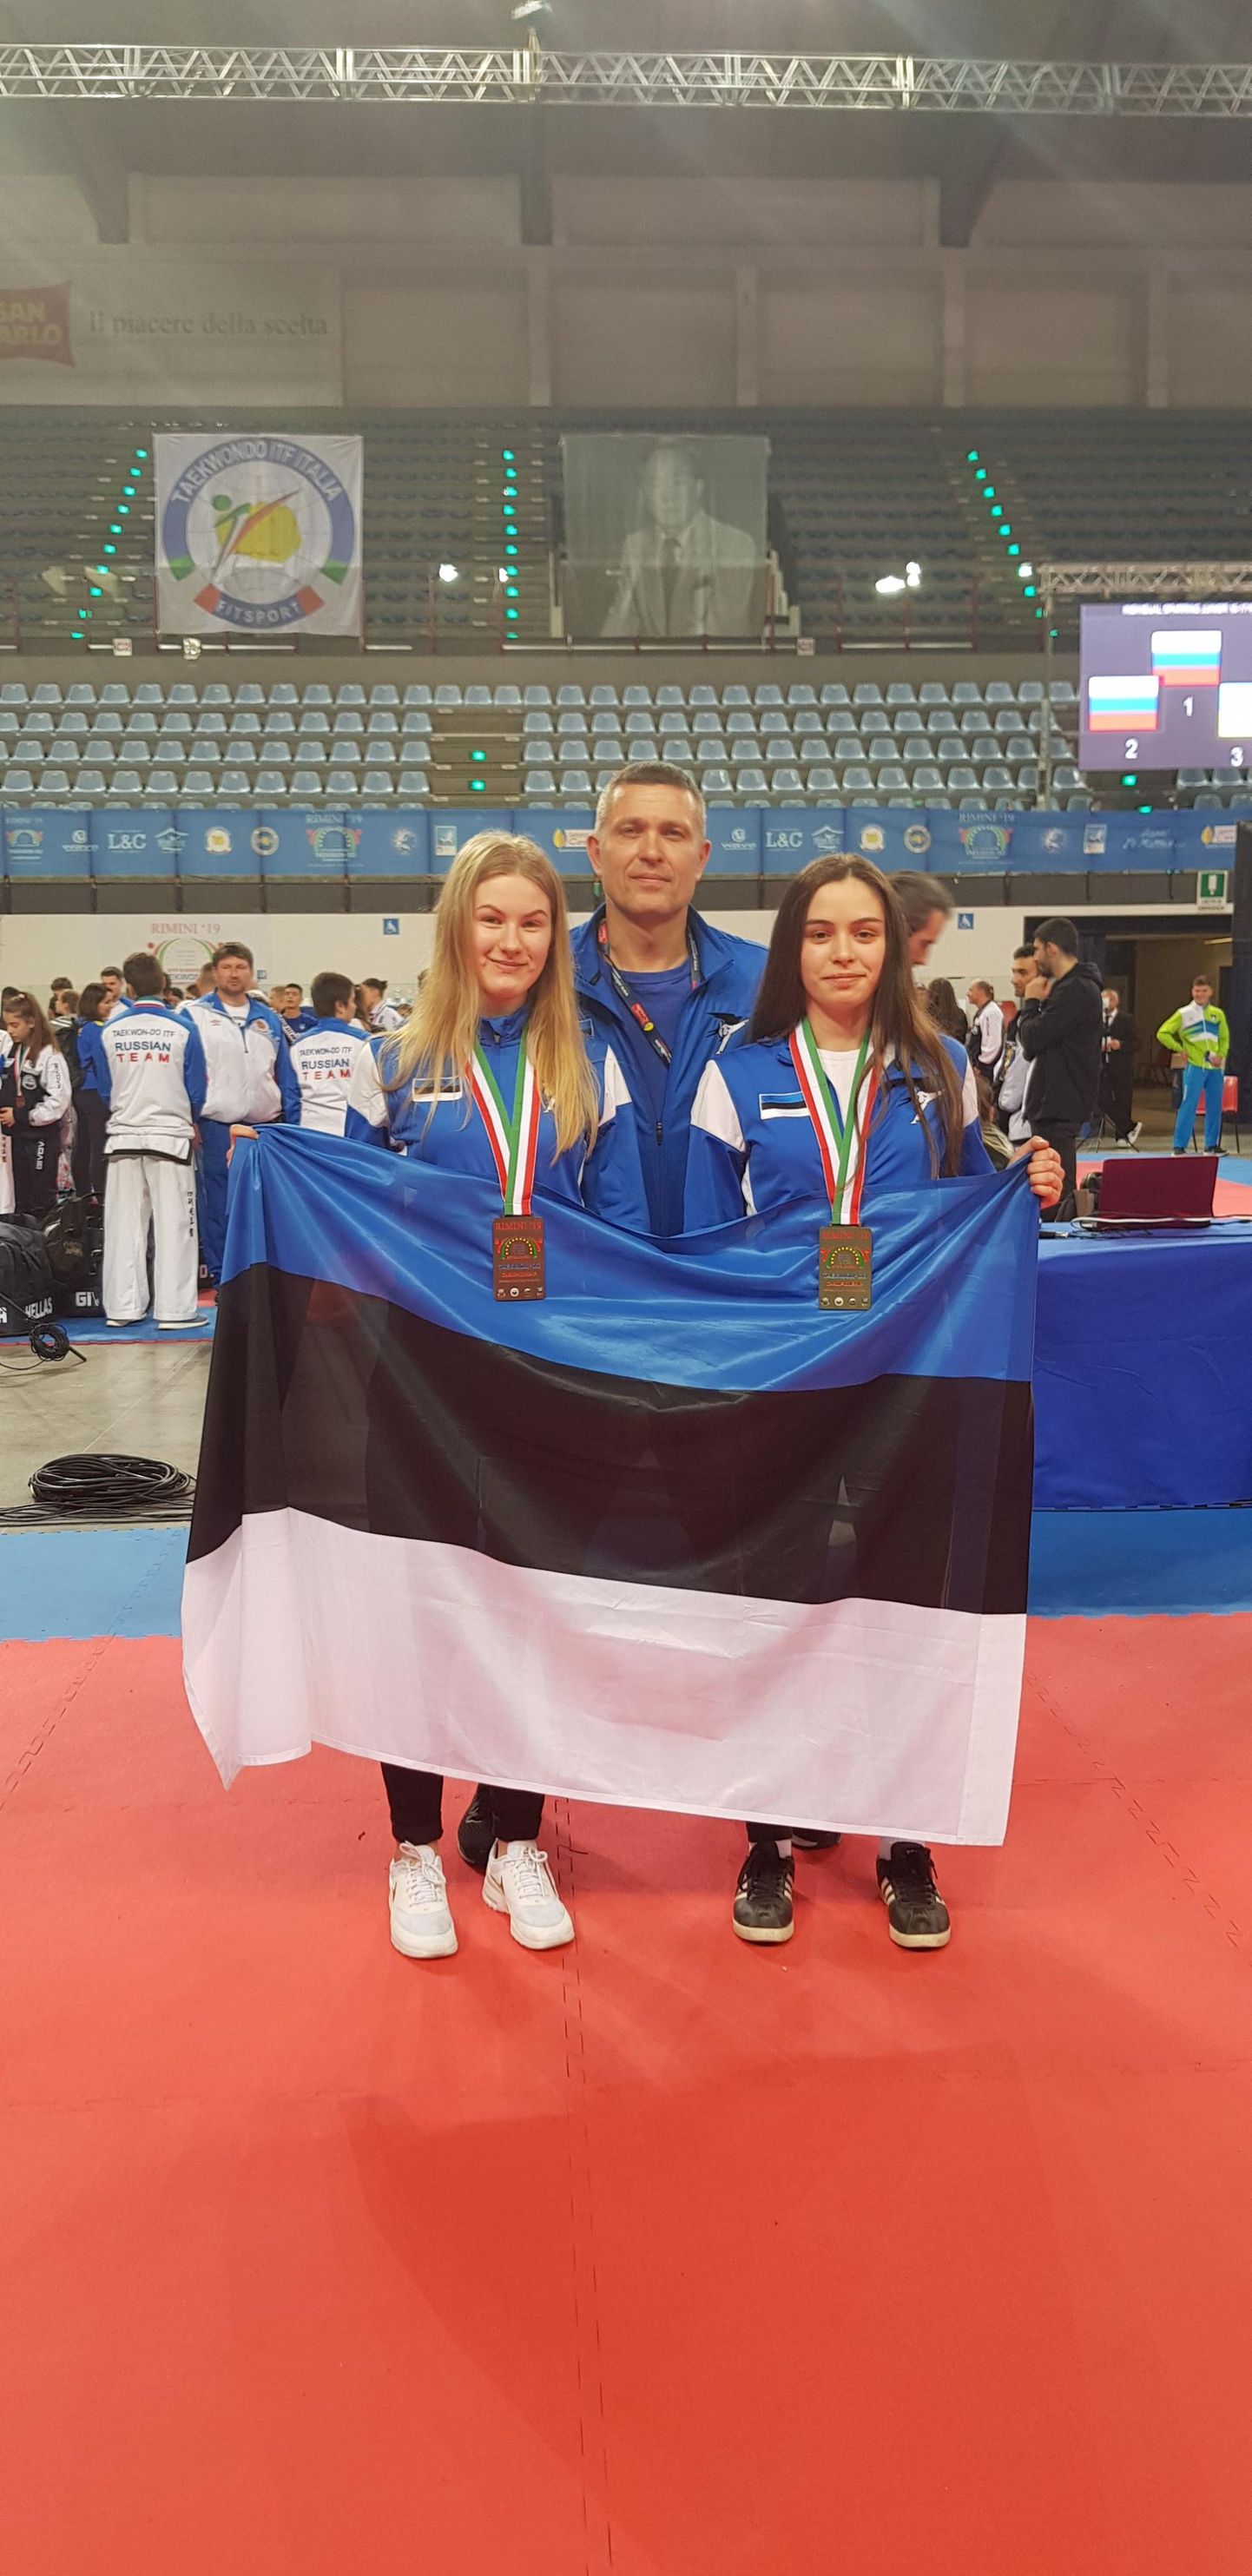 Pärnu taekwondo klubis treeniv Kamilla Velikopolje võitis Itaalias Riminis Euroopa meistrivõistlustel kuldmedali, korrates sellega oma tunamullust saavutust. Anette Russ tõi Eestile kolmanda koha.